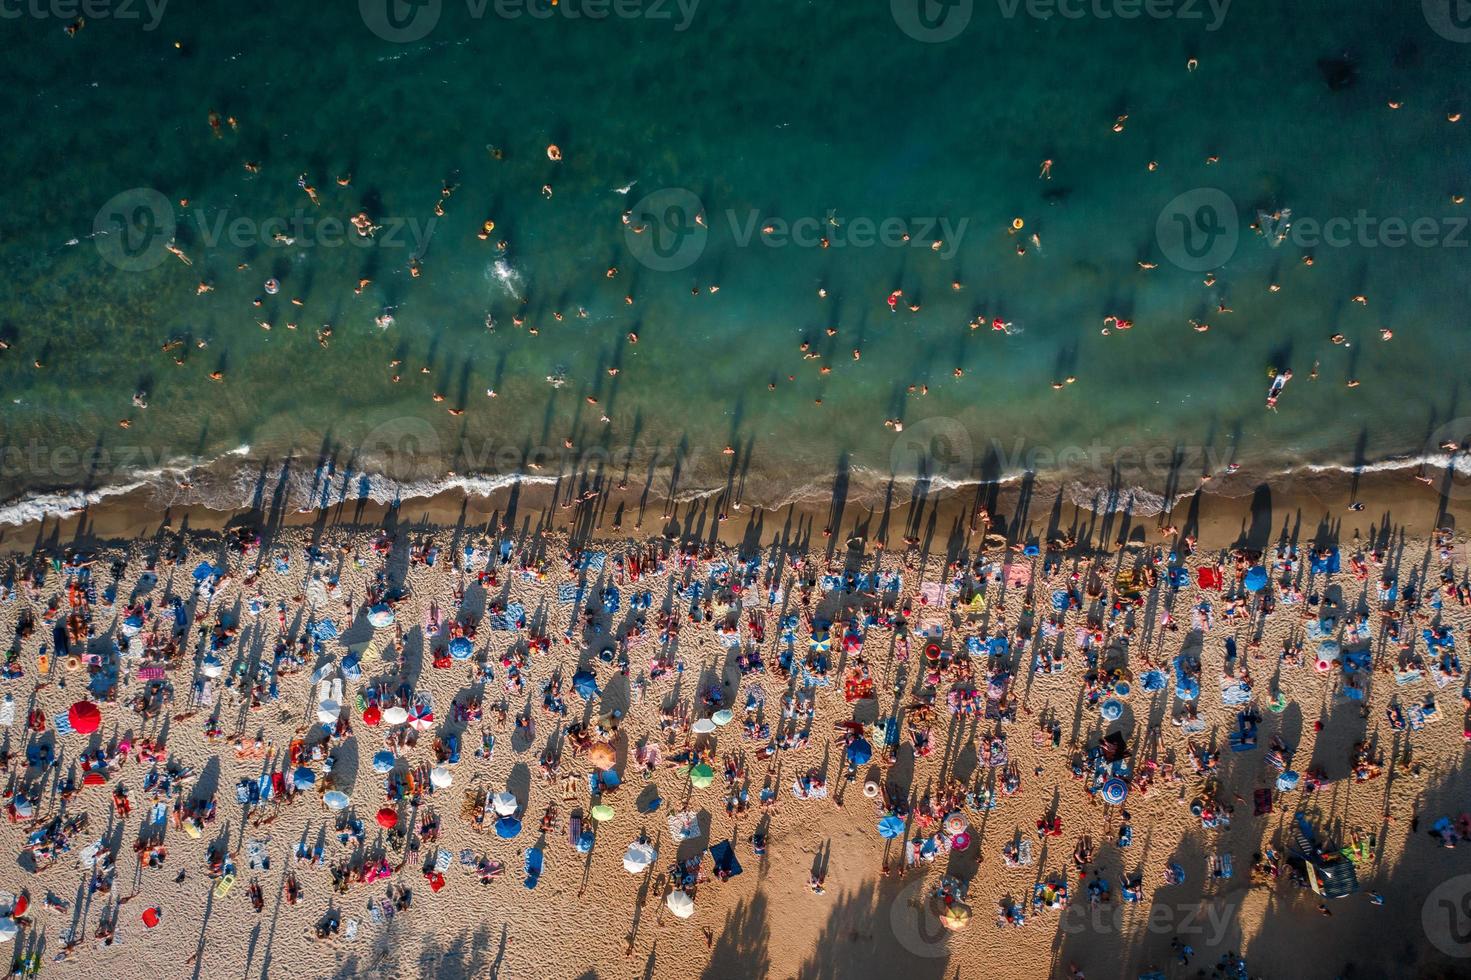 vista aérea da multidão de pessoas na praia foto